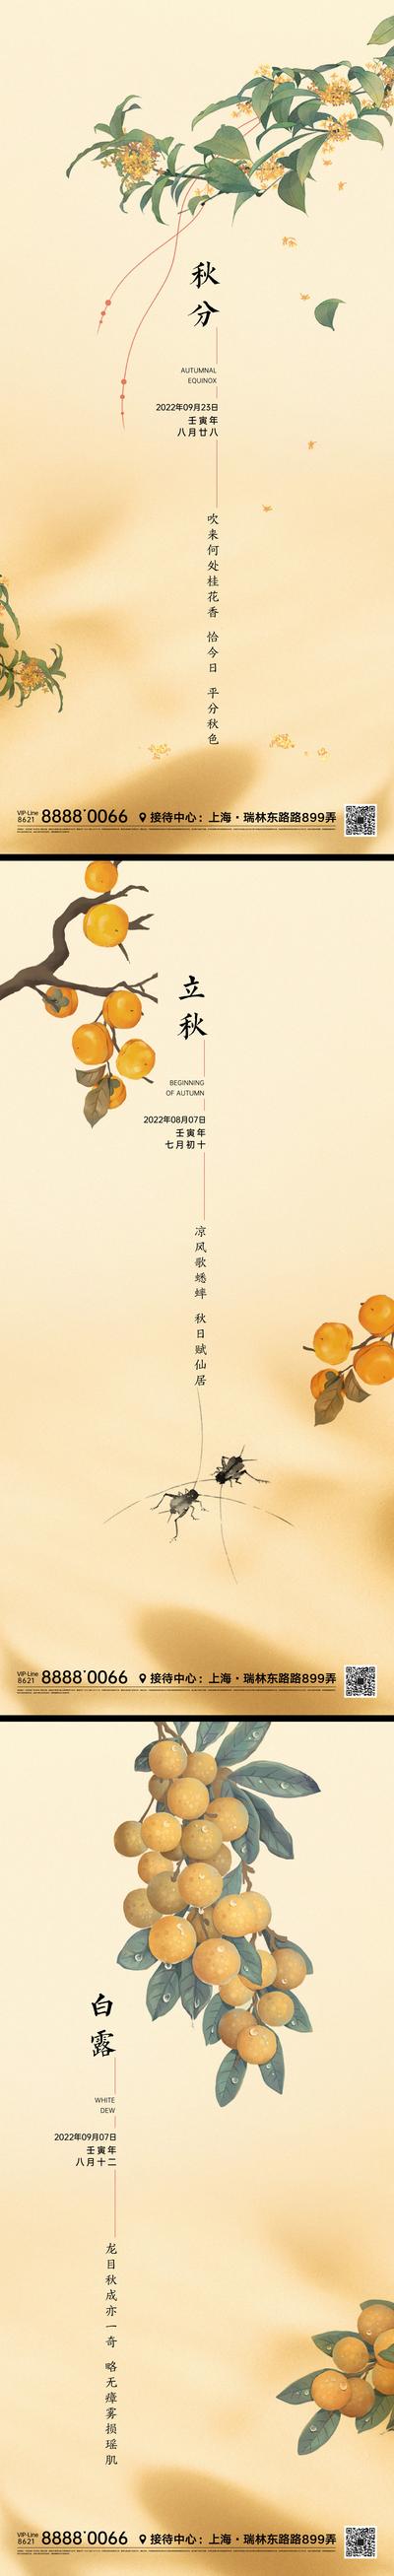 南门网 海报 二十四节气 立秋 秋分 白露 插画 简约 桂花 柿子 树枝